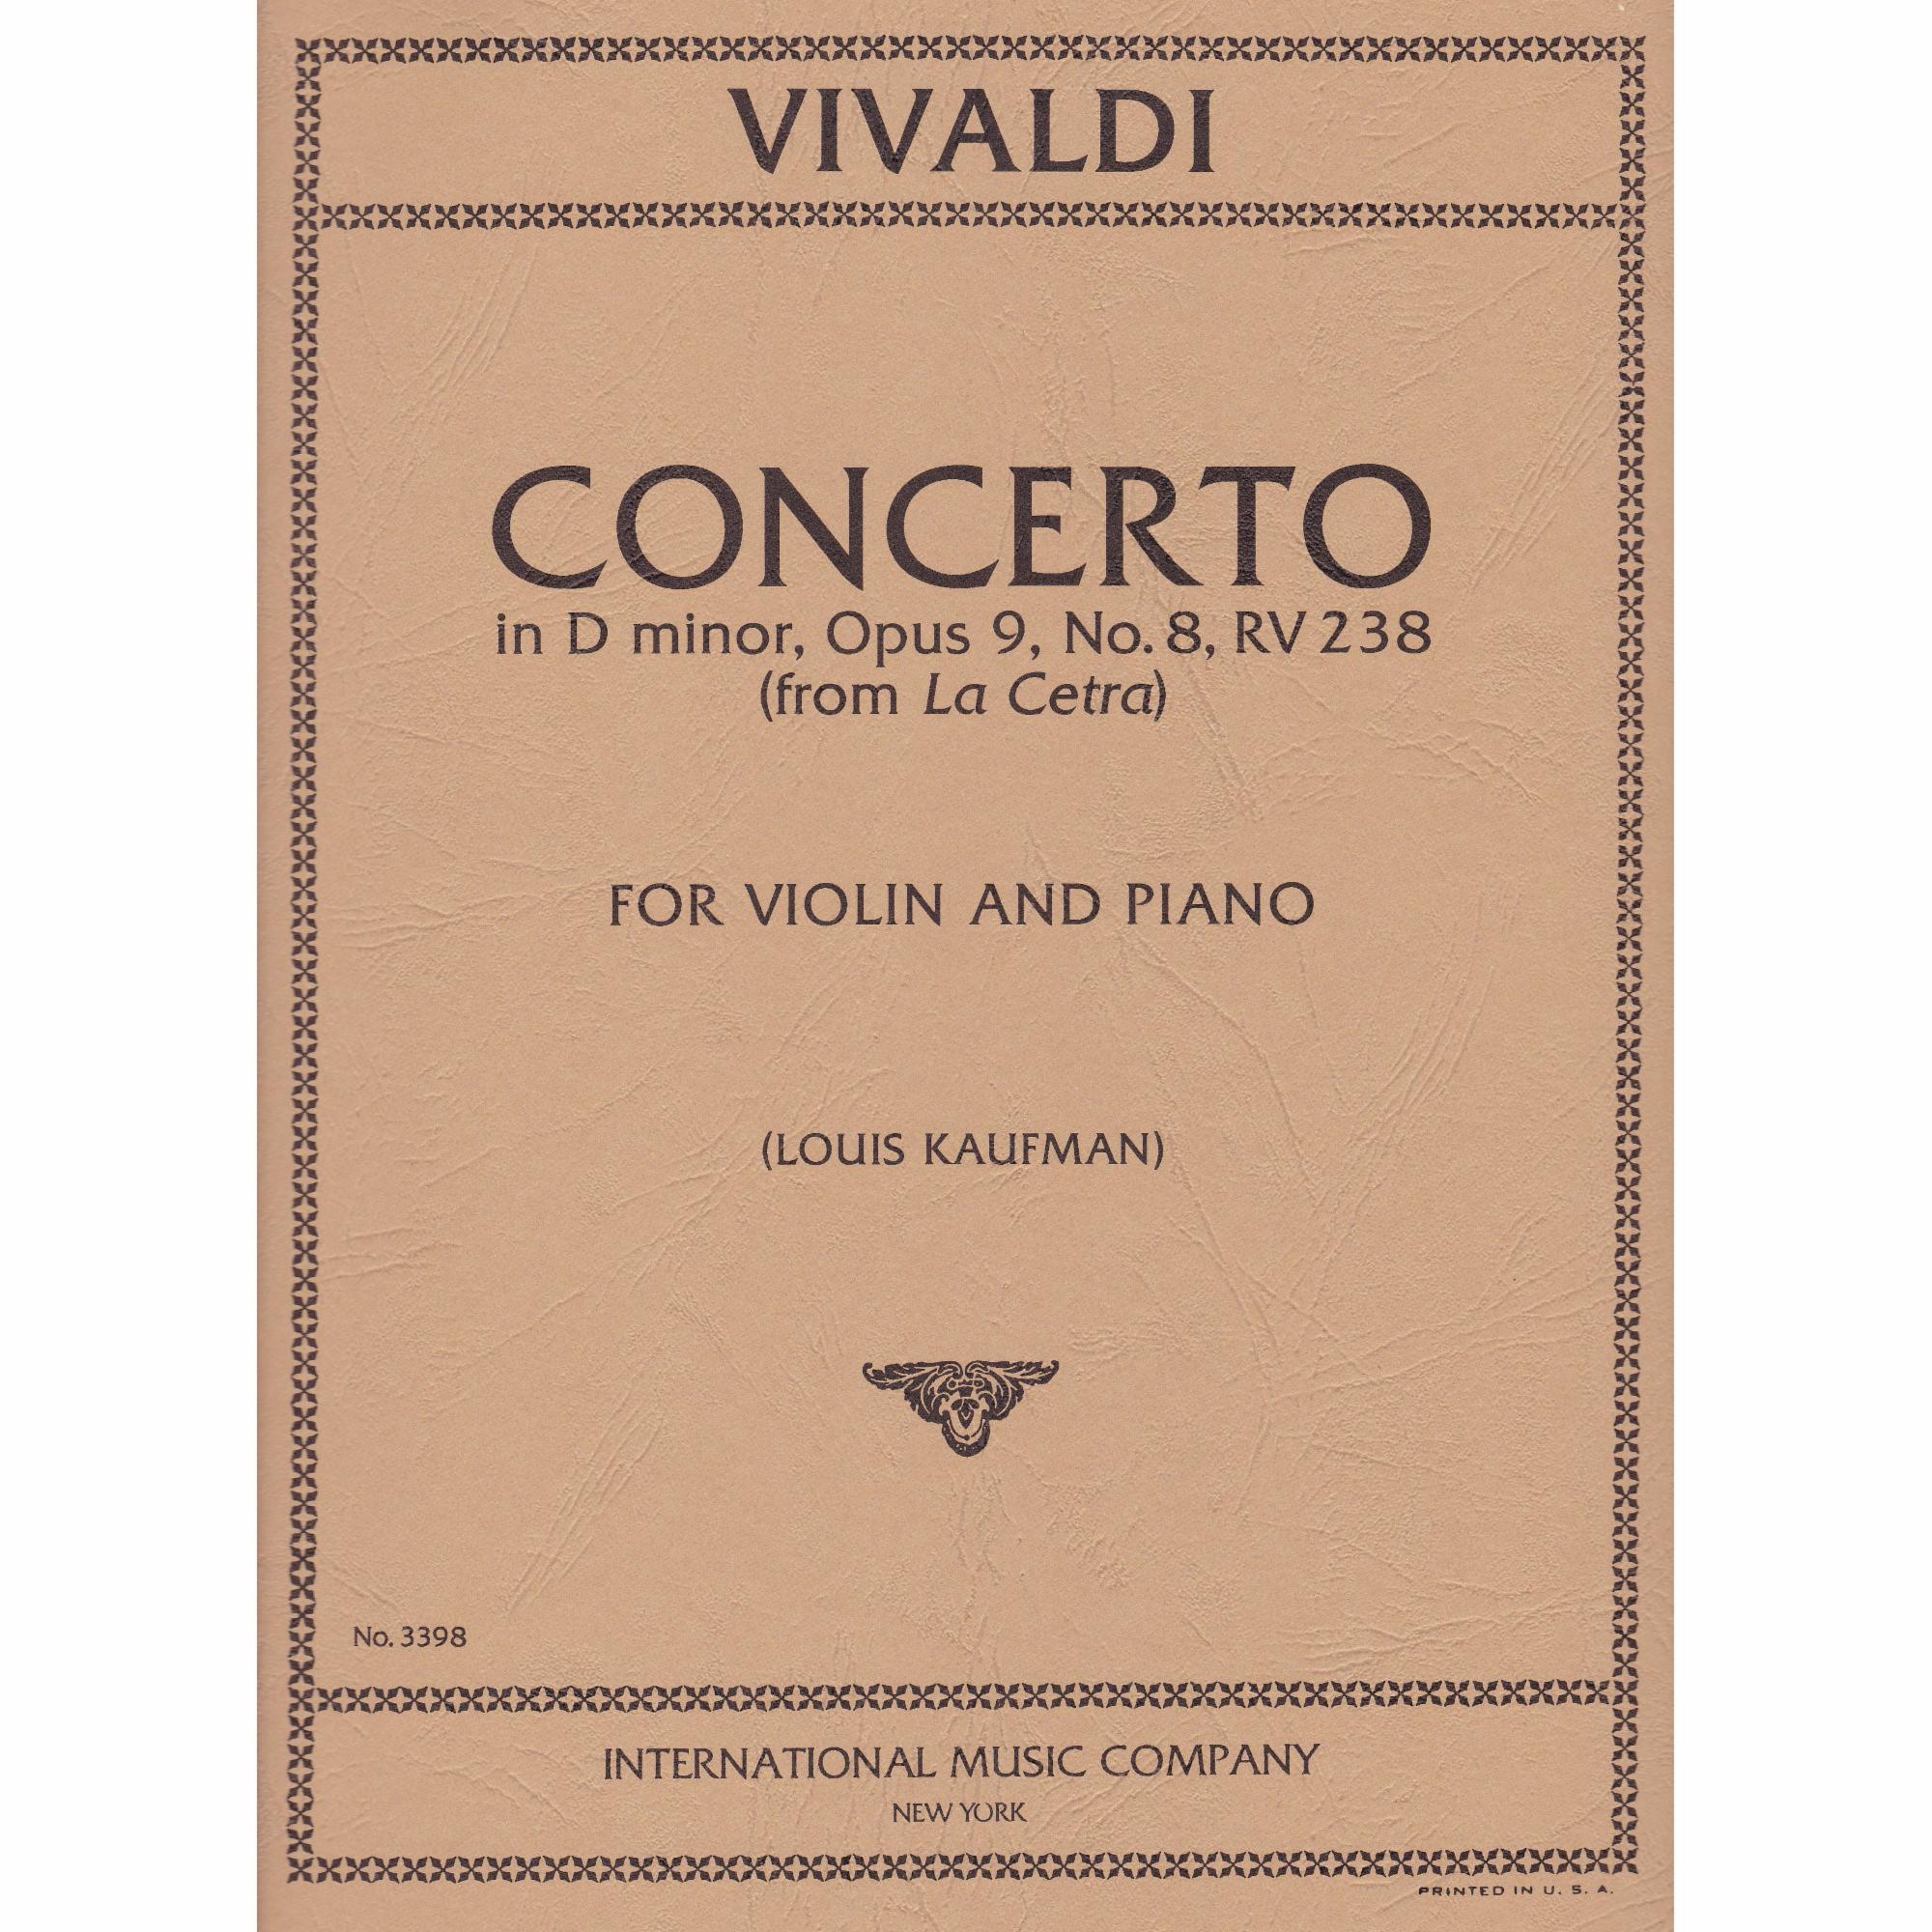 Violin Concerto in D Minor, Op. 9, No. 8